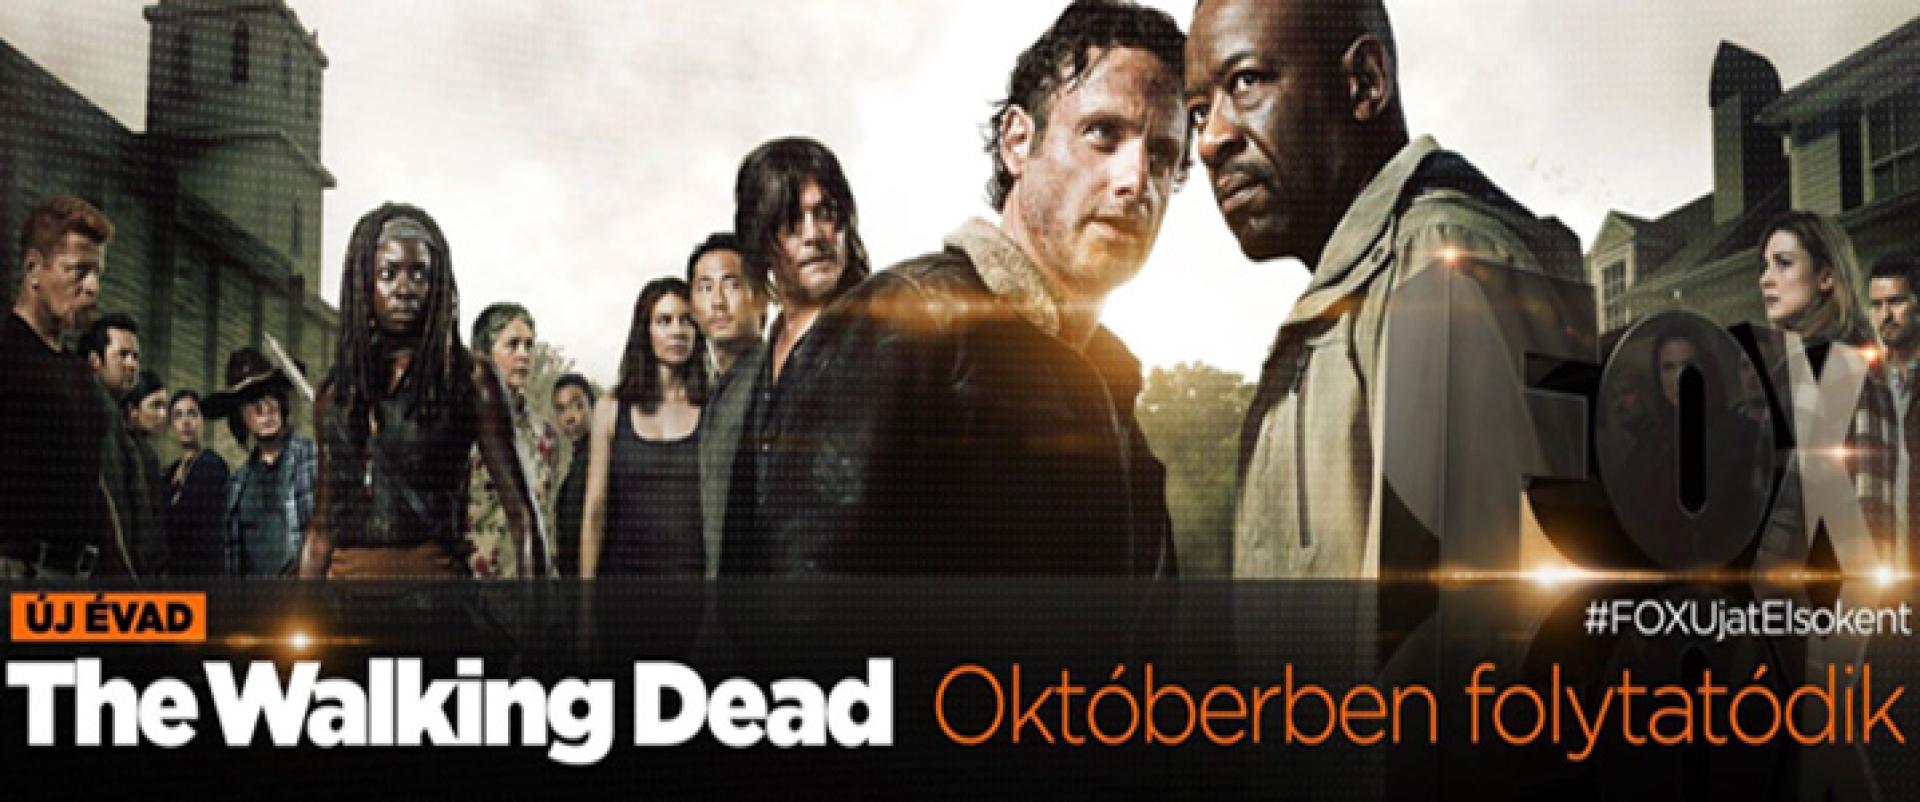 The Walking Dead, 6. évad: újabb színész csatlakozott